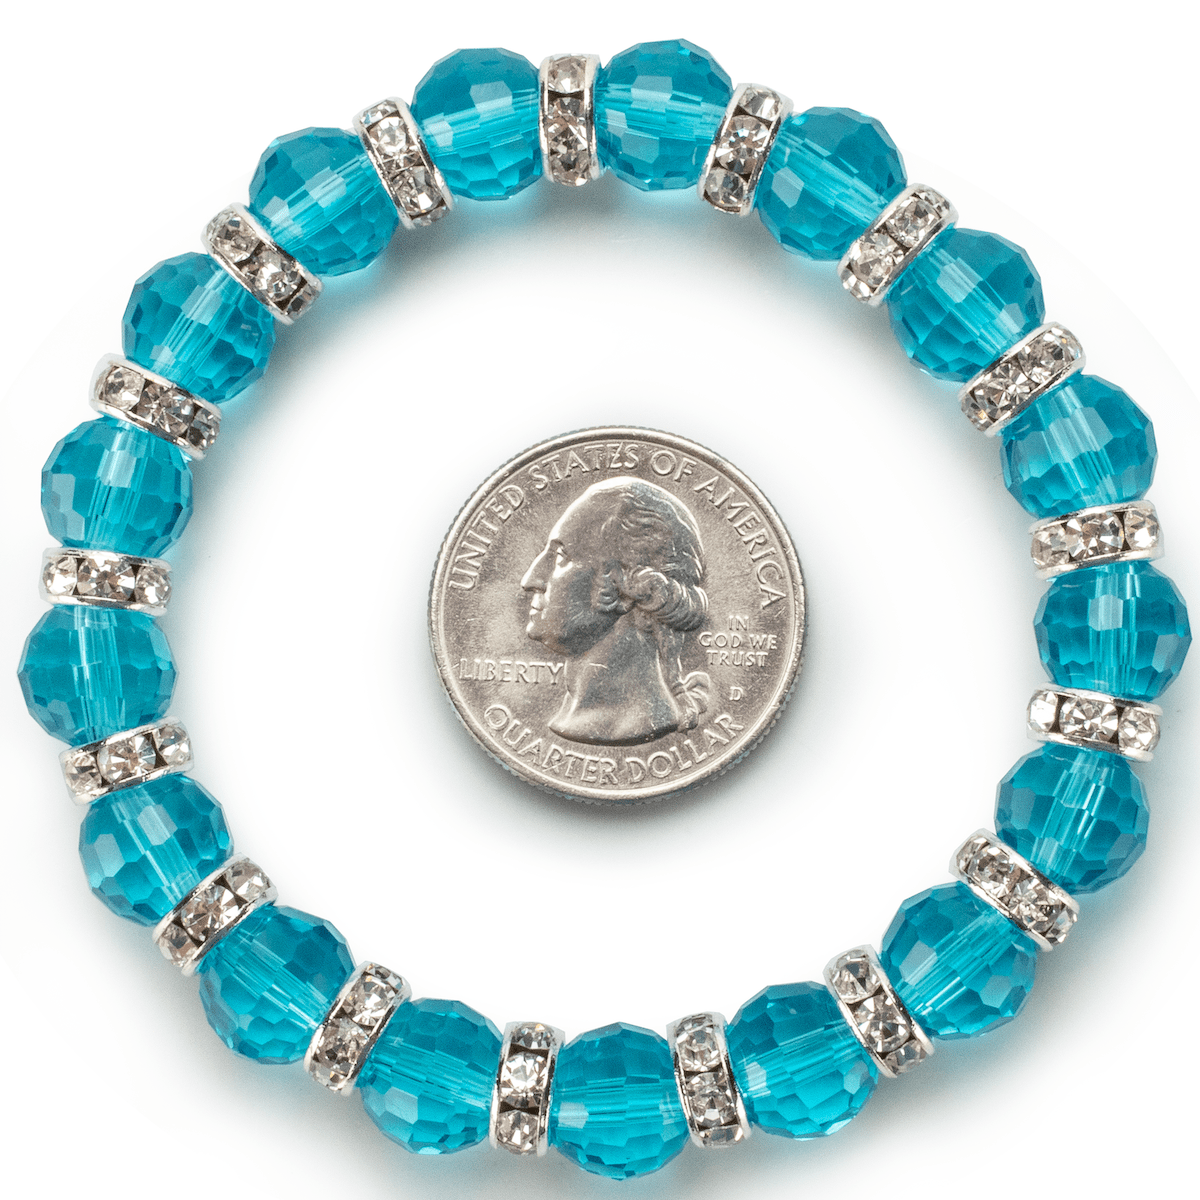 Kalifano Gorgeous Glass Jewelry Aqua Marine Gorgeous Glass Bracelet with Cubic Zirconia Crystals BLUE-BGG-N28